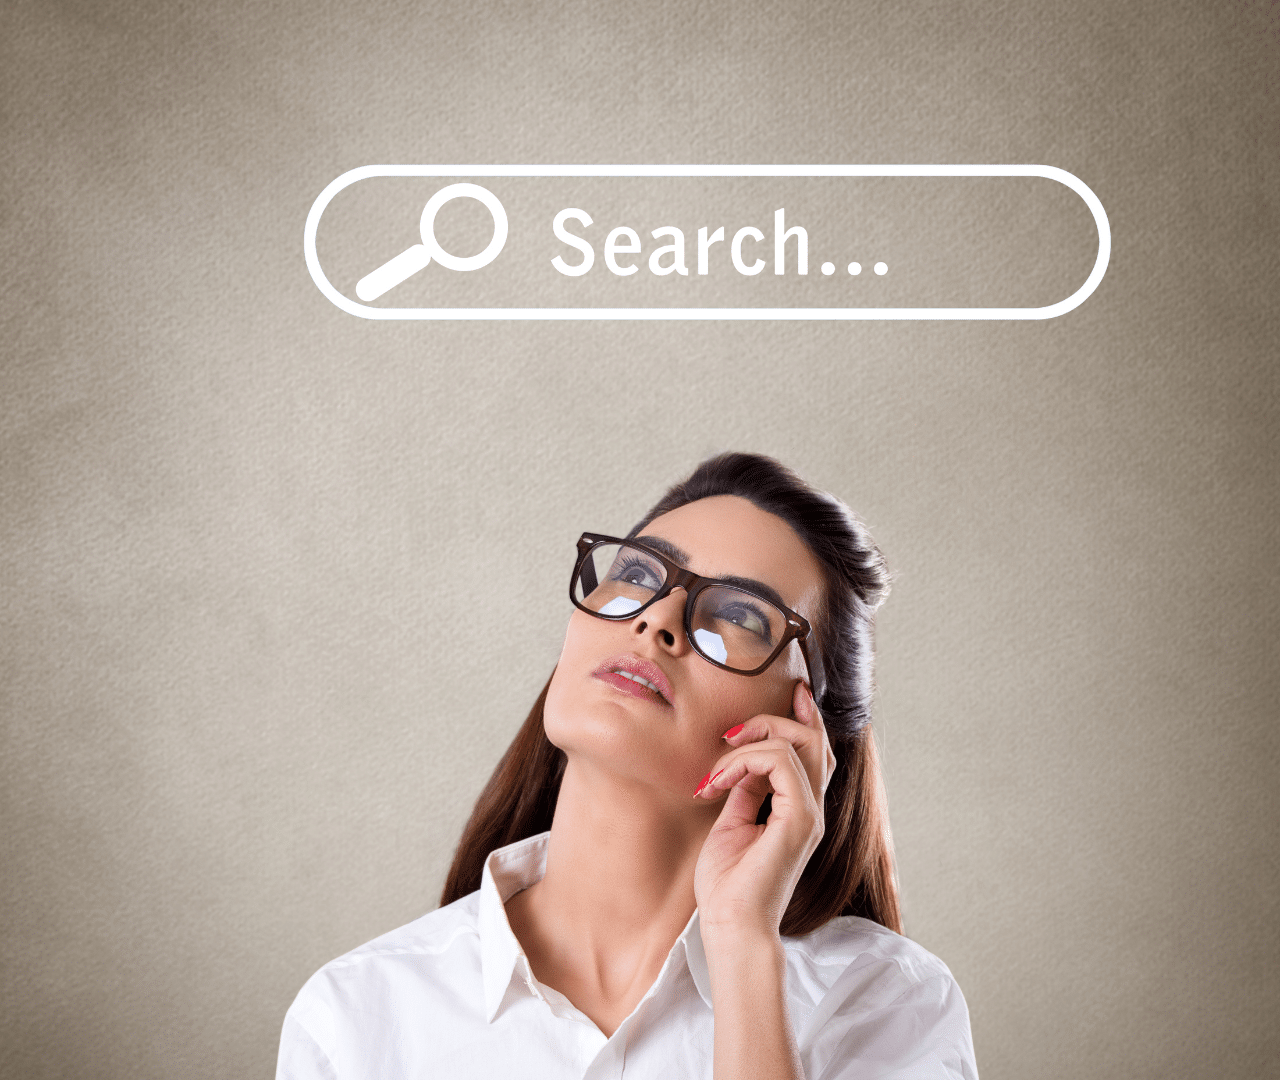 איך לבדוק חיפושים פופולאריים ברשת - DMYB blog